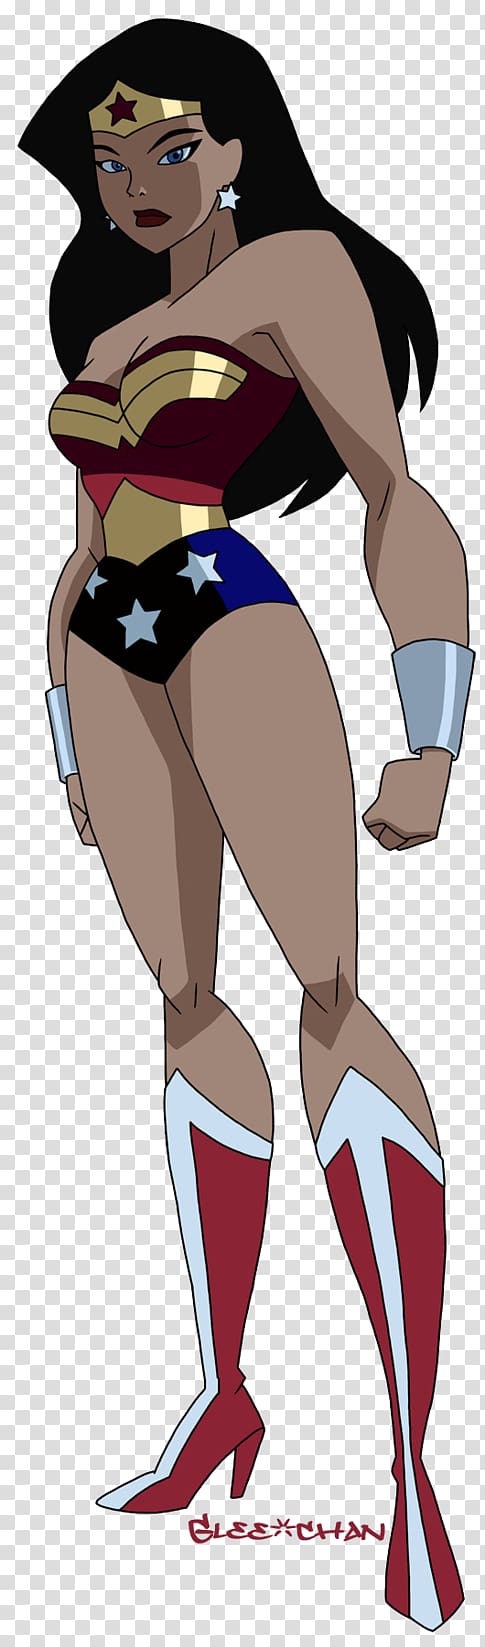 Susan Eisenberg Justice League Unlimited Wonder Woman Black Canary Superhero, comics justice league unlimited transparent background PNG clipart